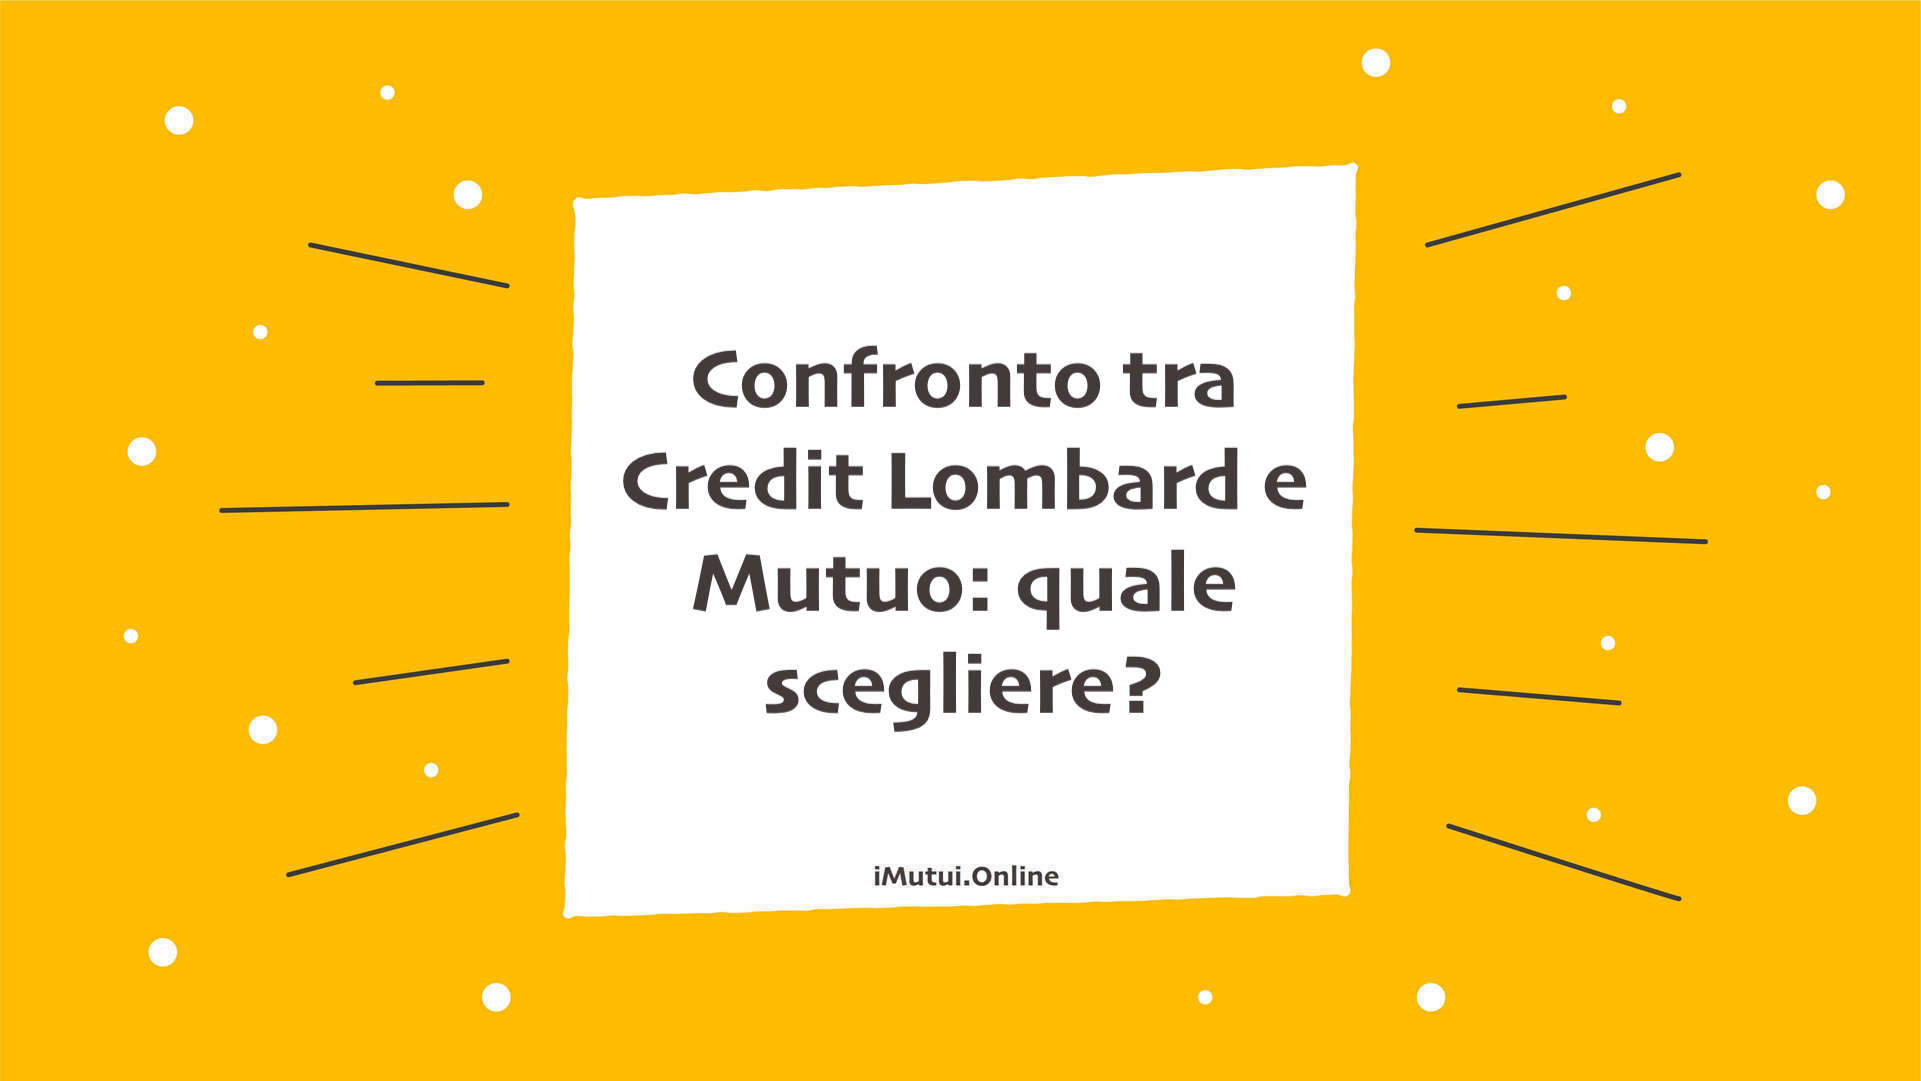 Confronto tra Credit Lombard e Mutuo: quale scegliere?